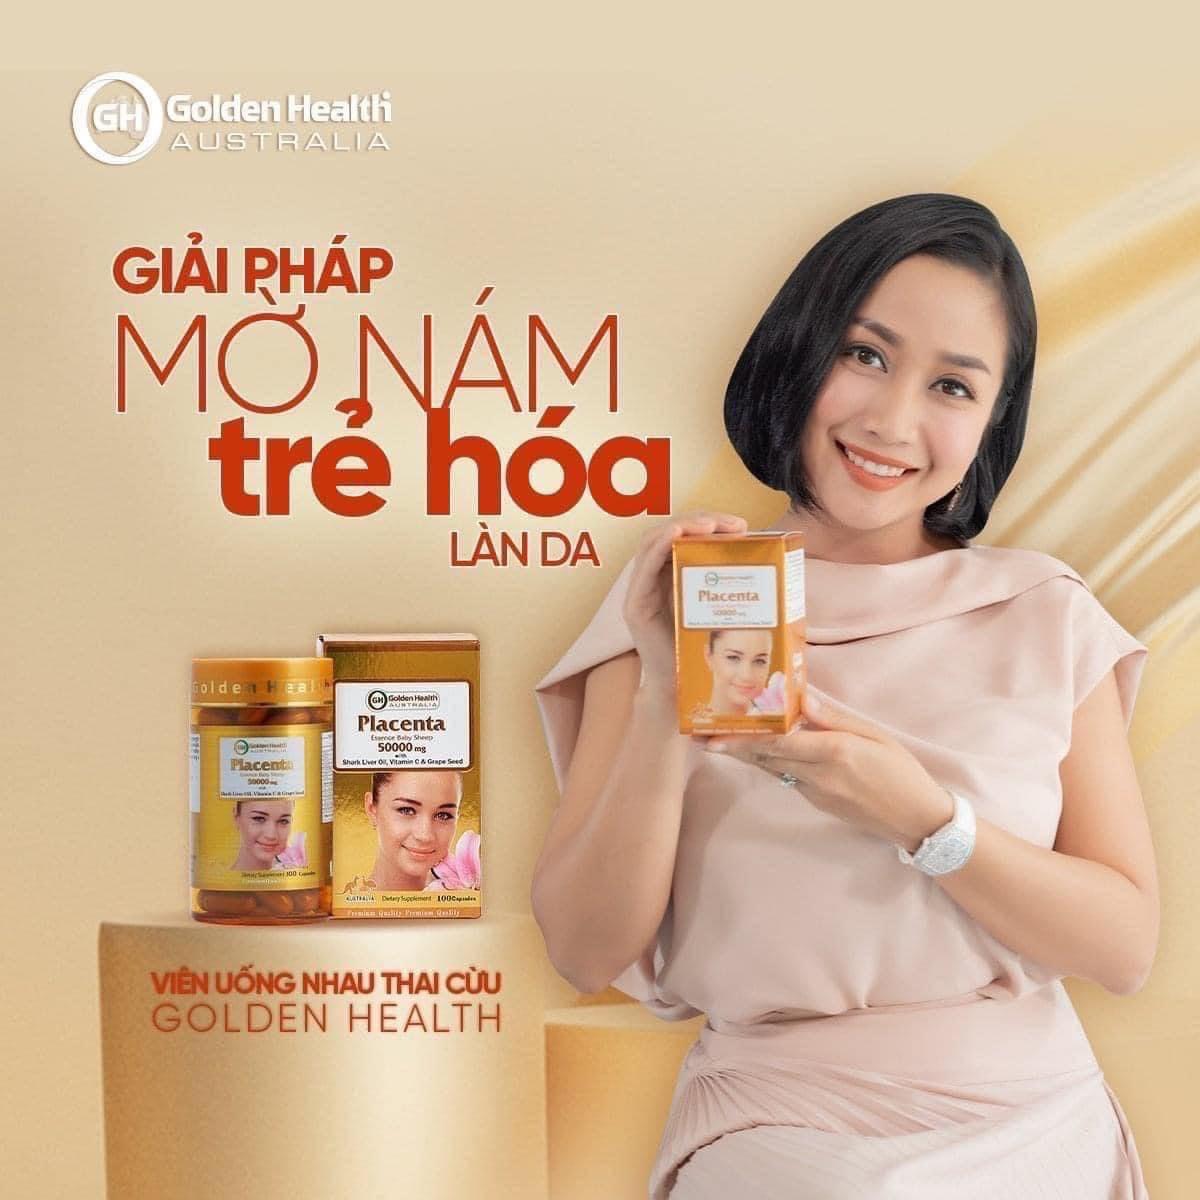 Viên Uống Nhau Thai Cừu Golden Health Placenta chống Oxi hóa, duy trì vẻ đẹp thanh xuân